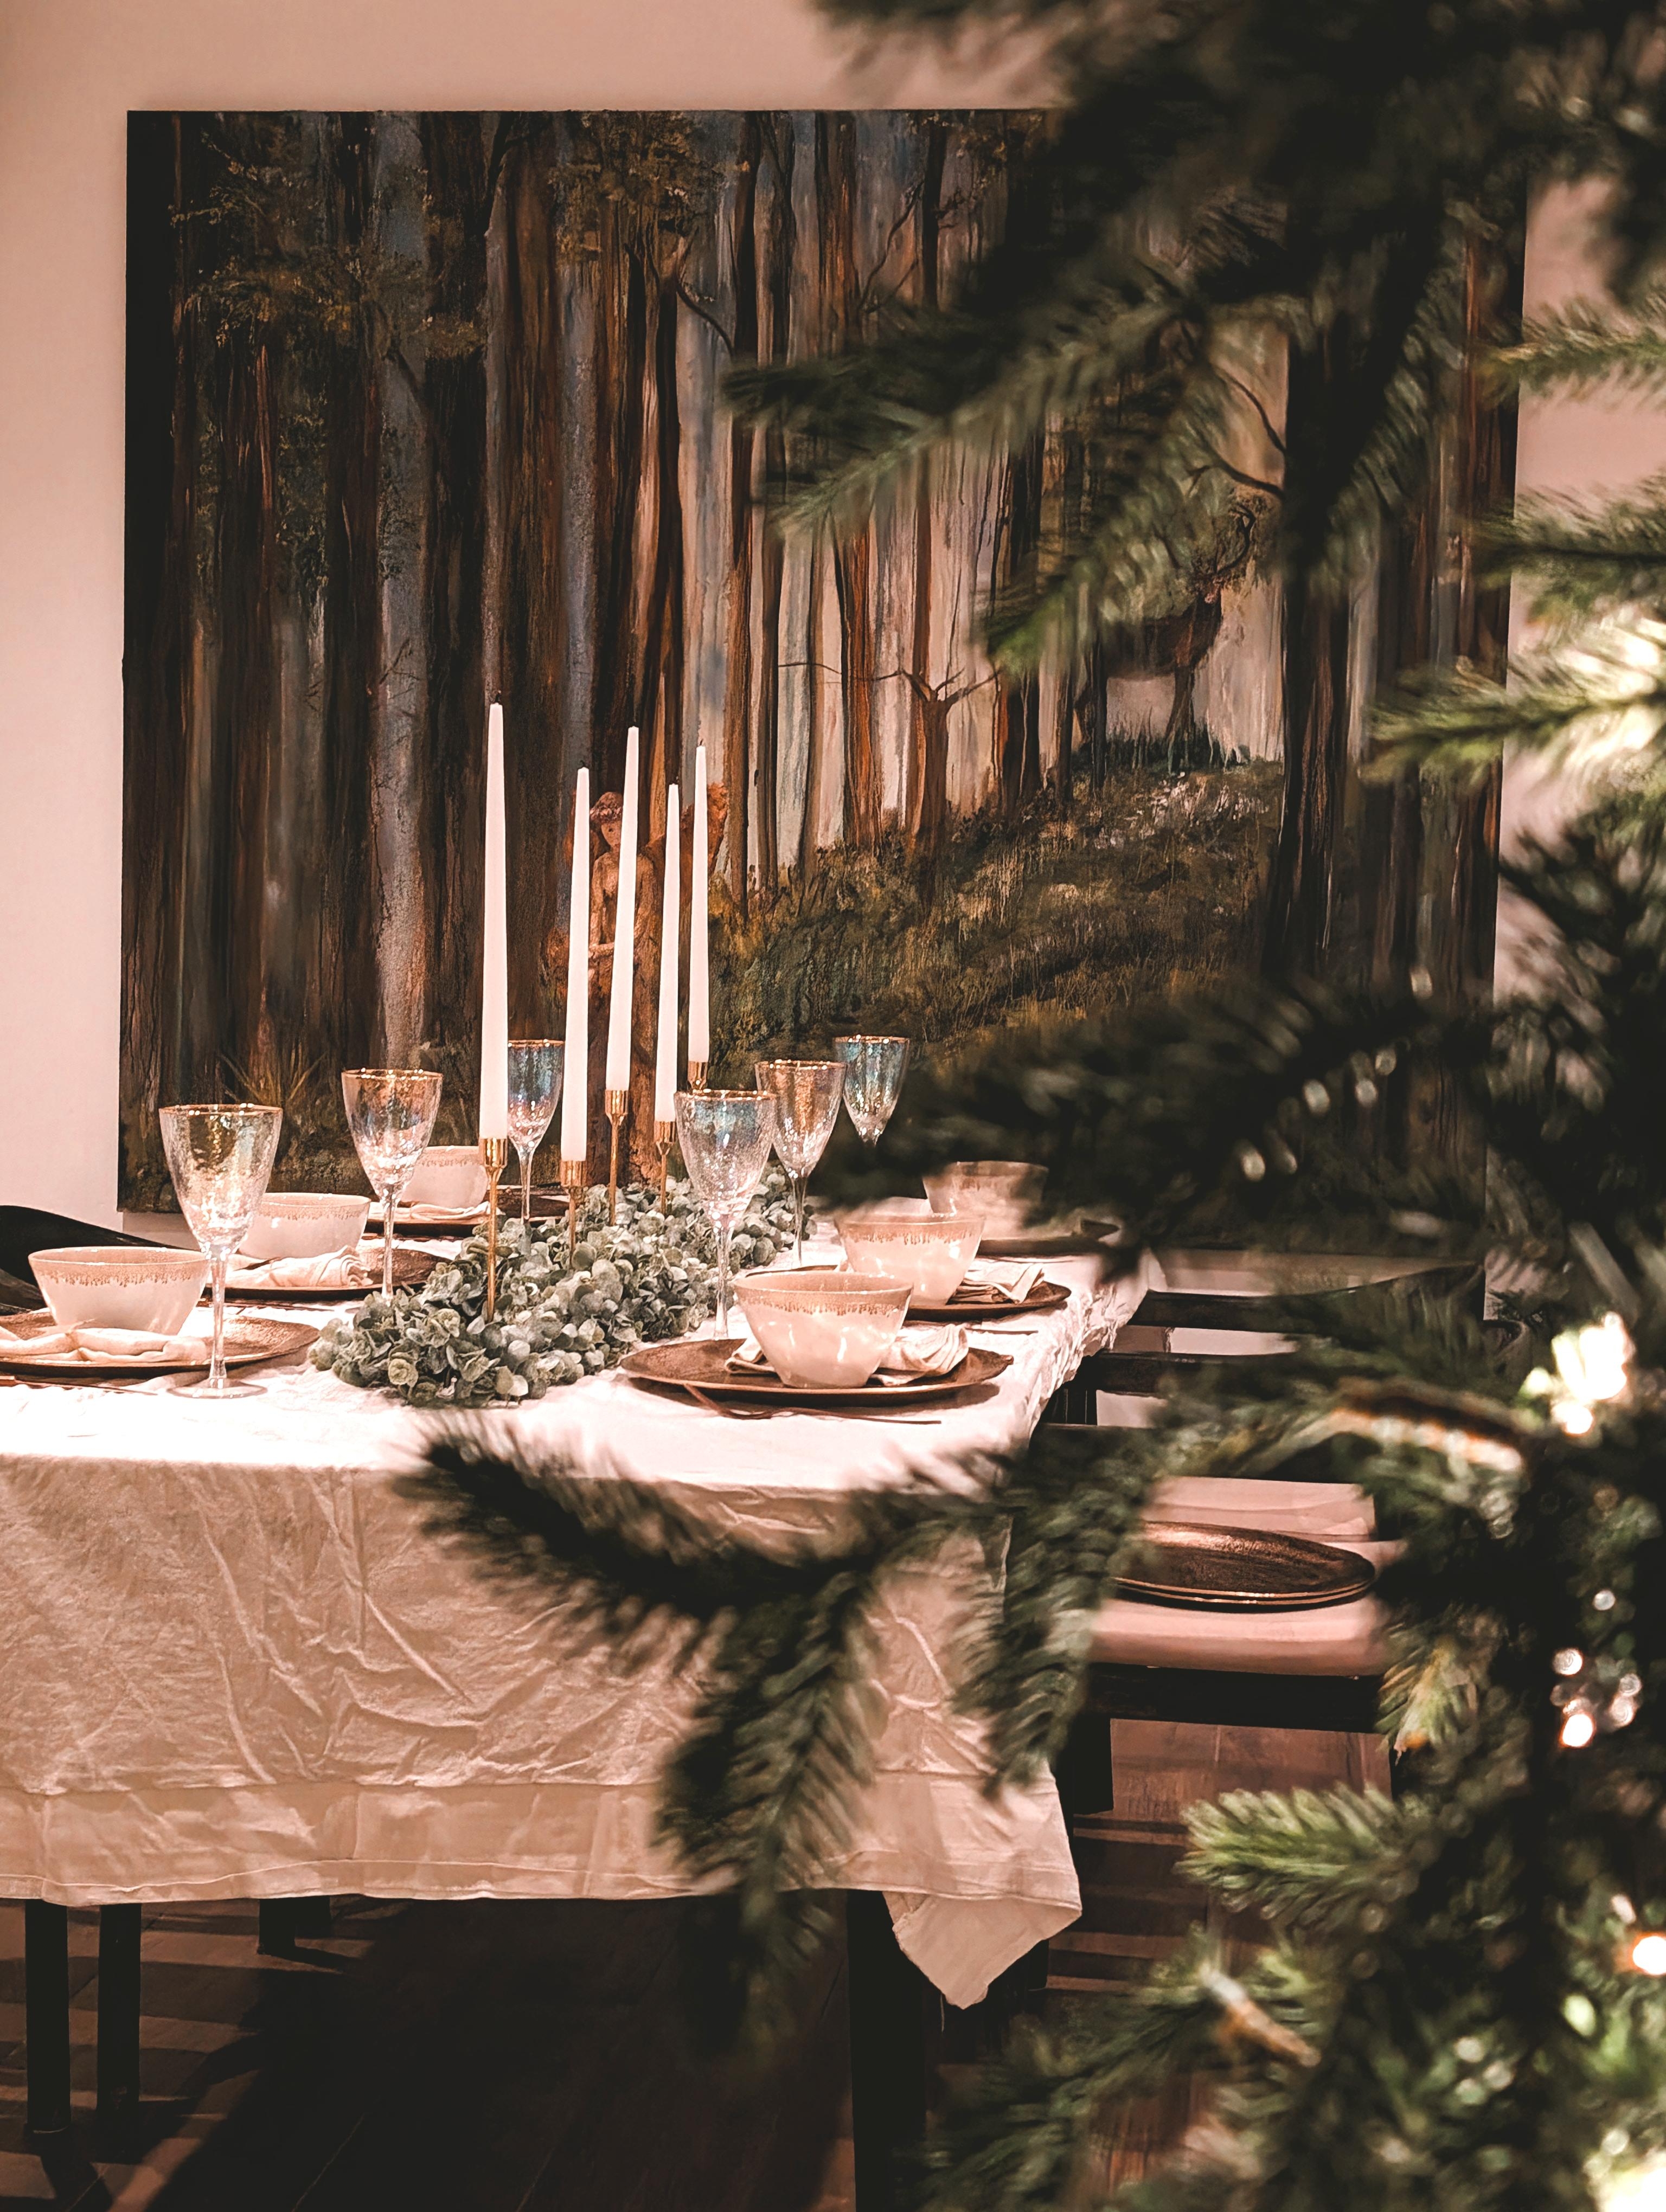 Christmas table 
#table #inspo #christmas #love